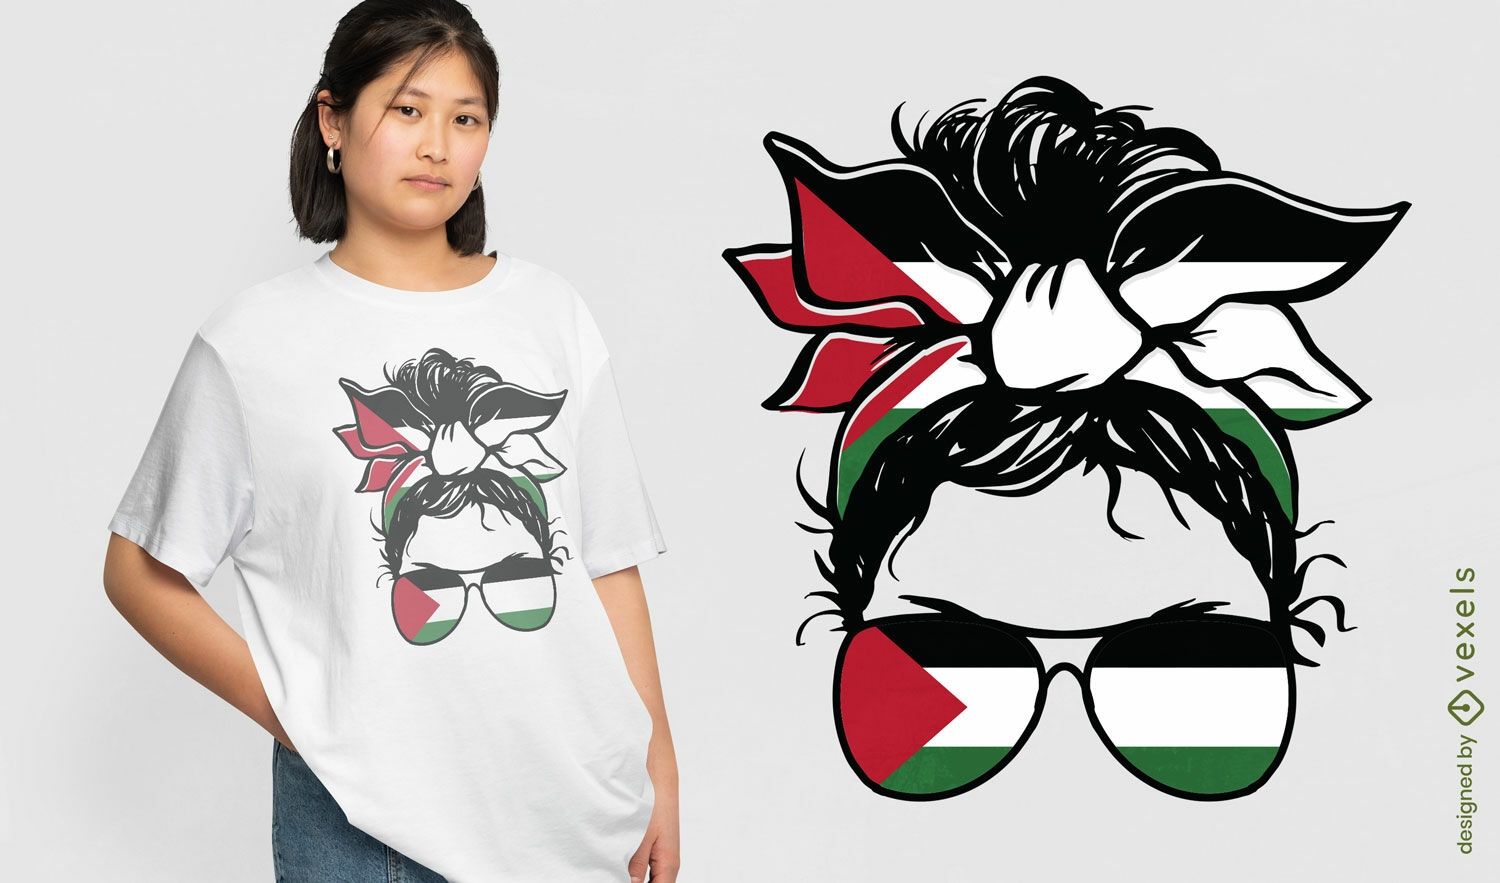 Diseño de camiseta de accesorios de bandera palestina.